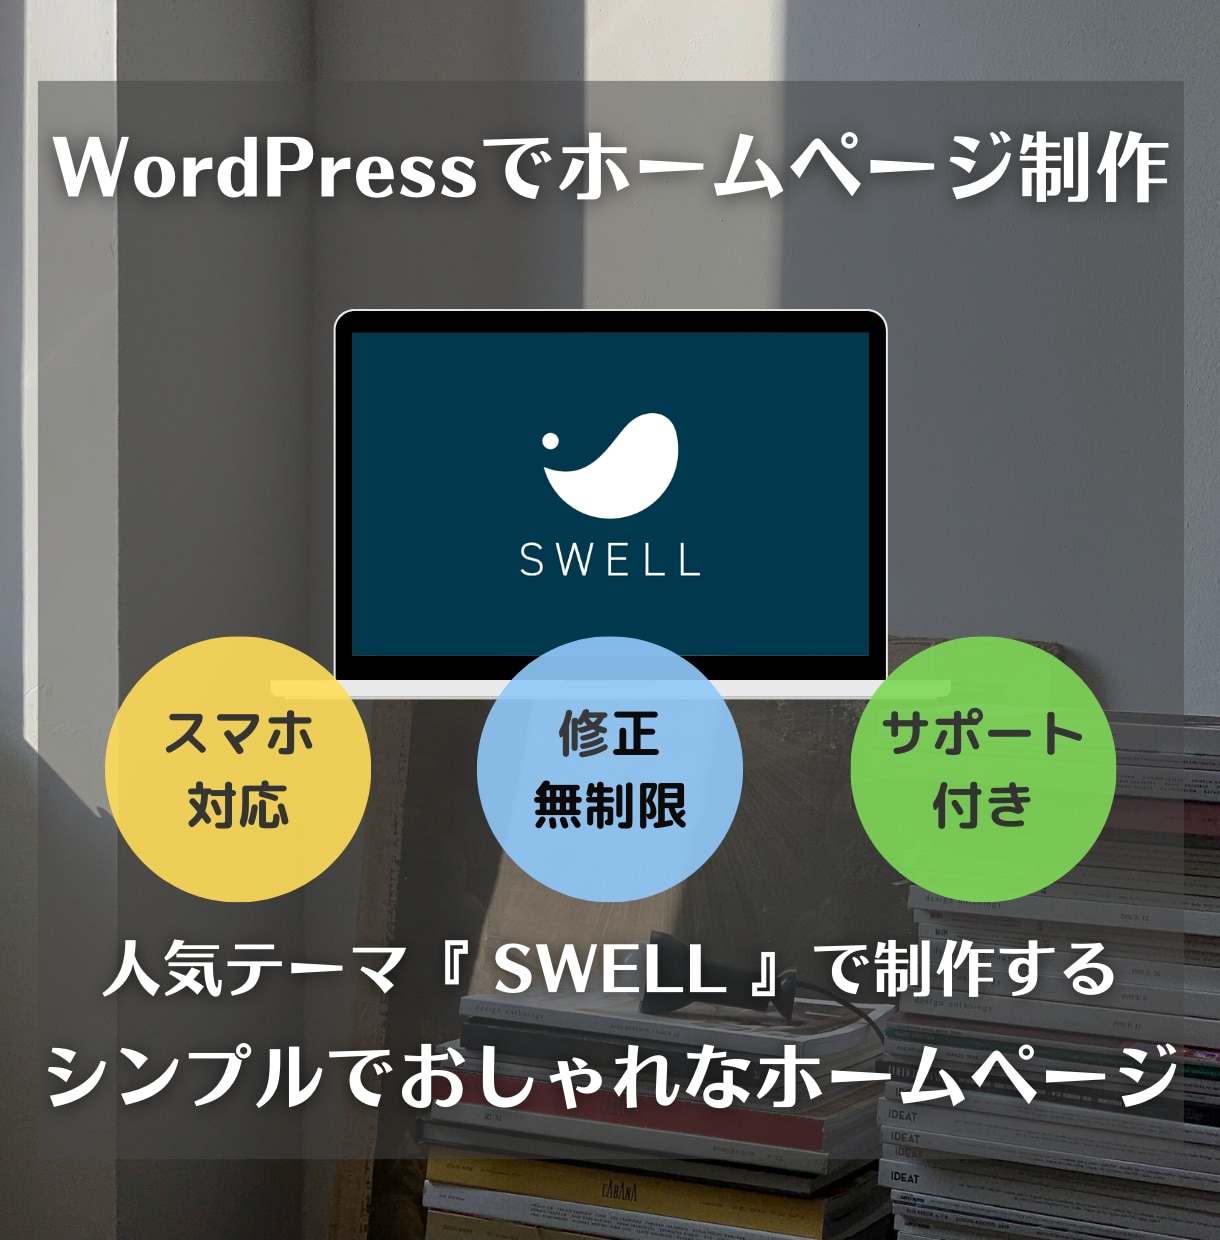 WordPressでおしゃれなホームページ作ります 『SWELL』で制作！格安・更新簡単！初めてのHPにどうぞ。 イメージ1